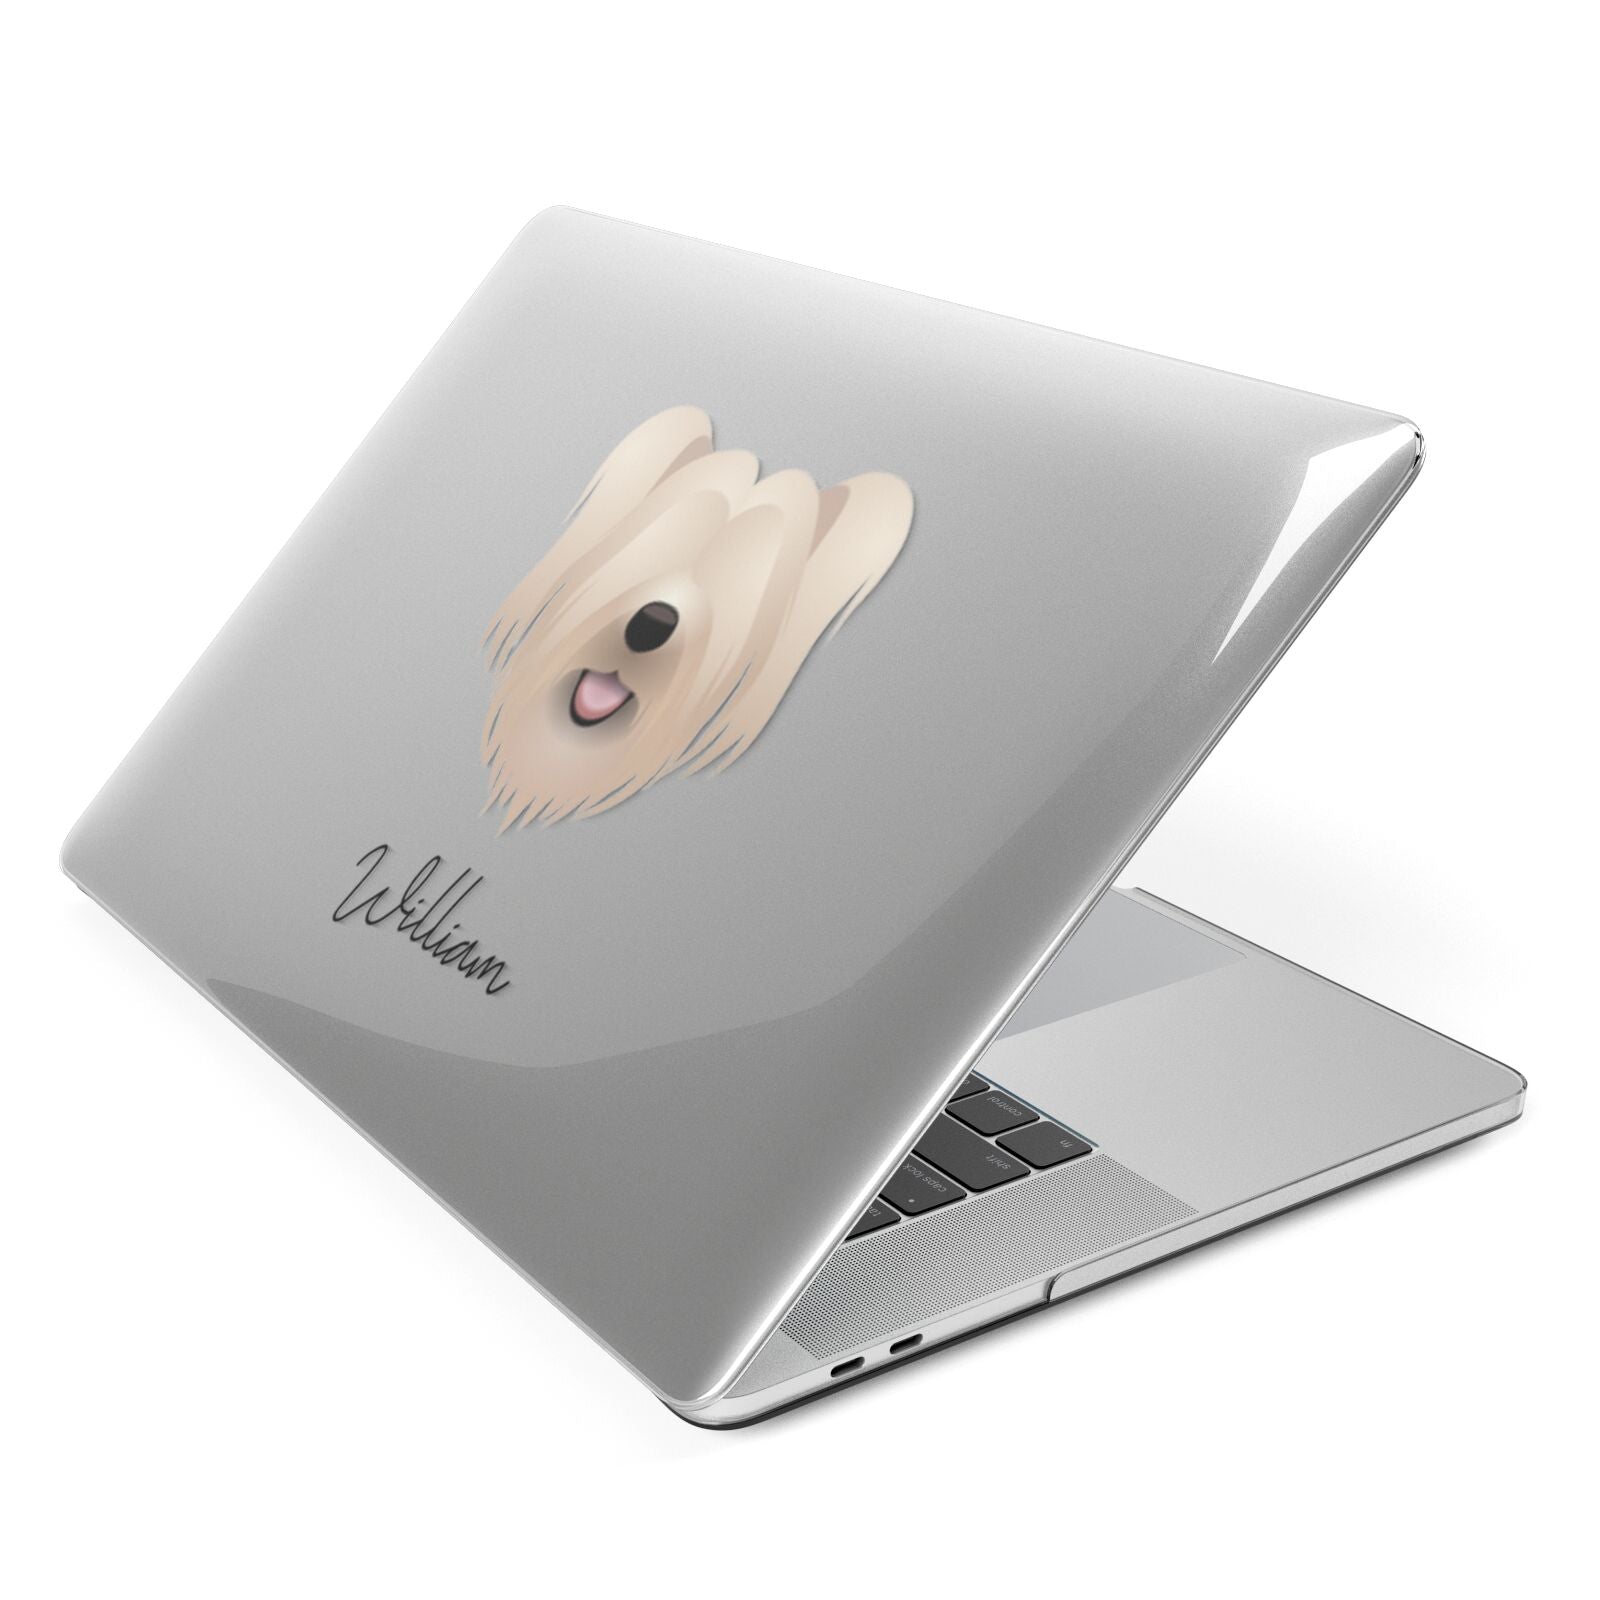 Skye Terrier Personalised Apple MacBook Case Side View